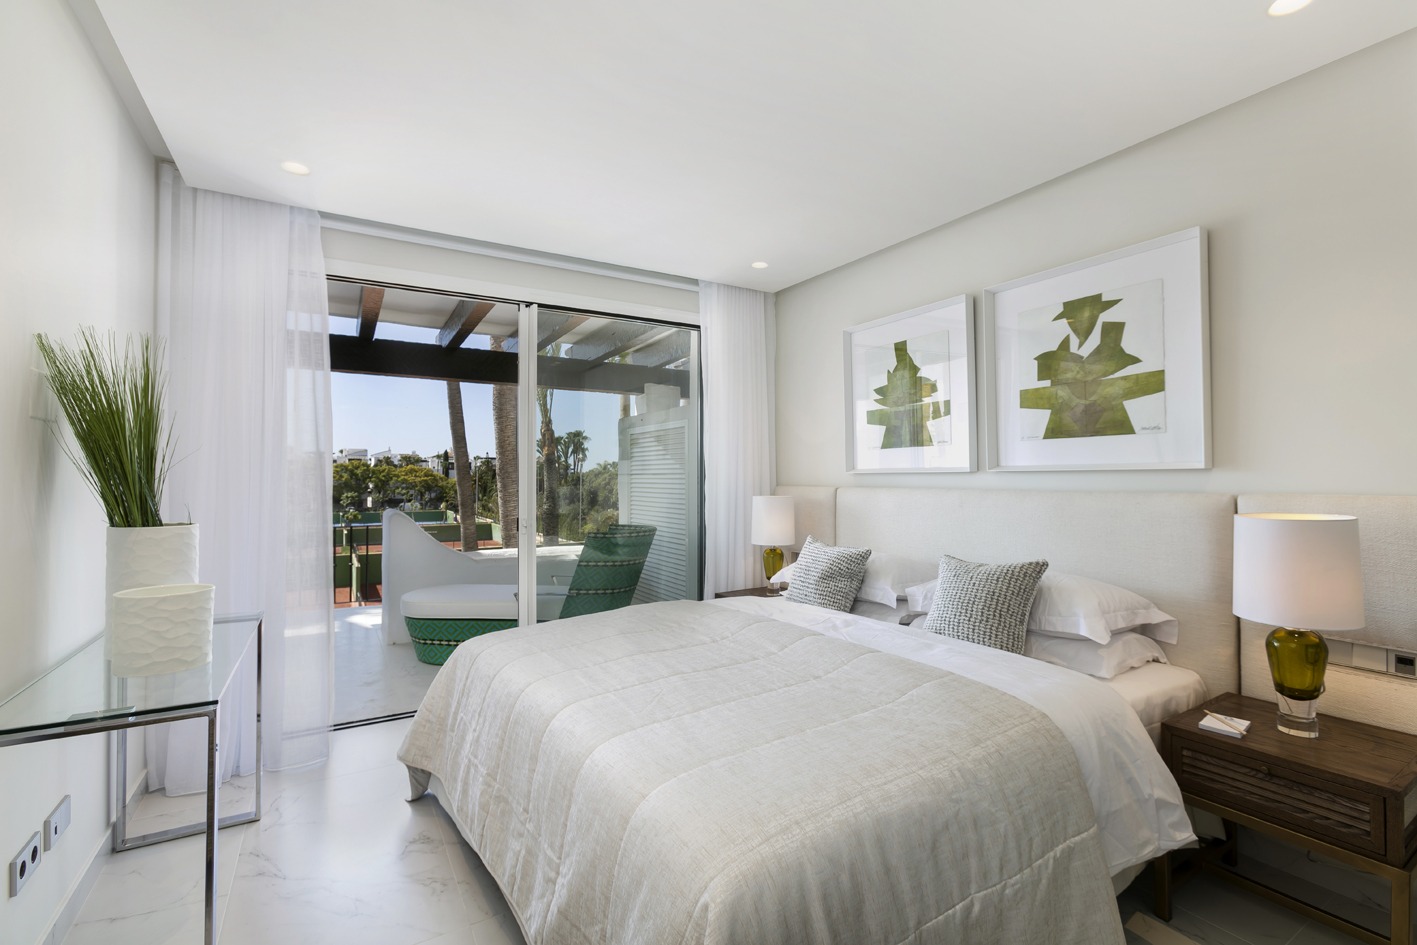 Kentia light natural colors Master Bedroom with green details Interior Design - Originals Interiors